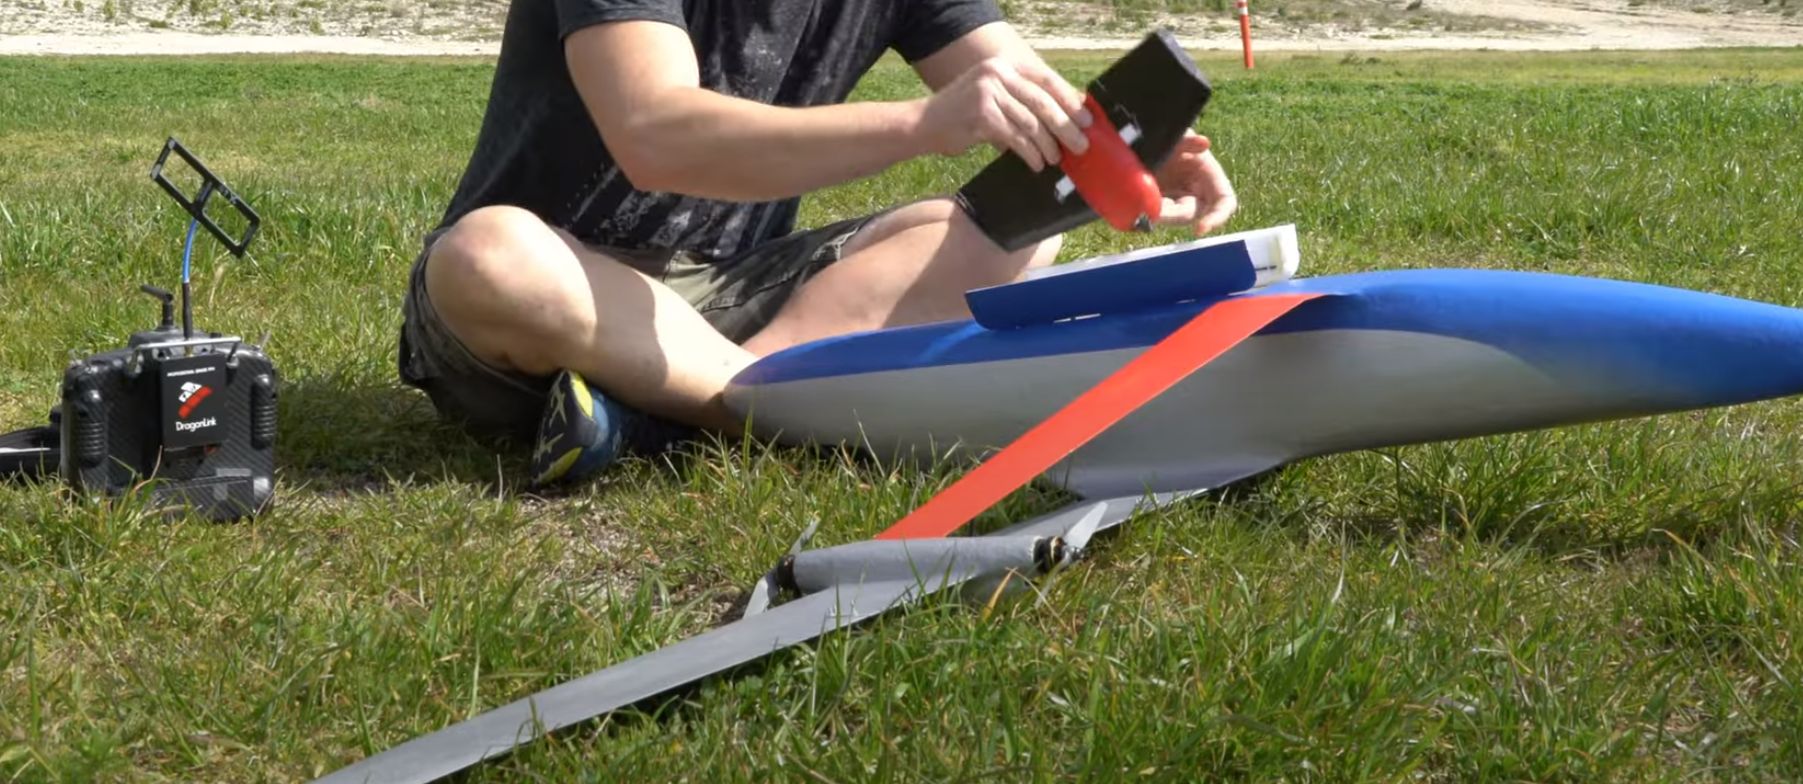 Budowa modelu samolotu z kolumną zębatą: sens czy nonsens?